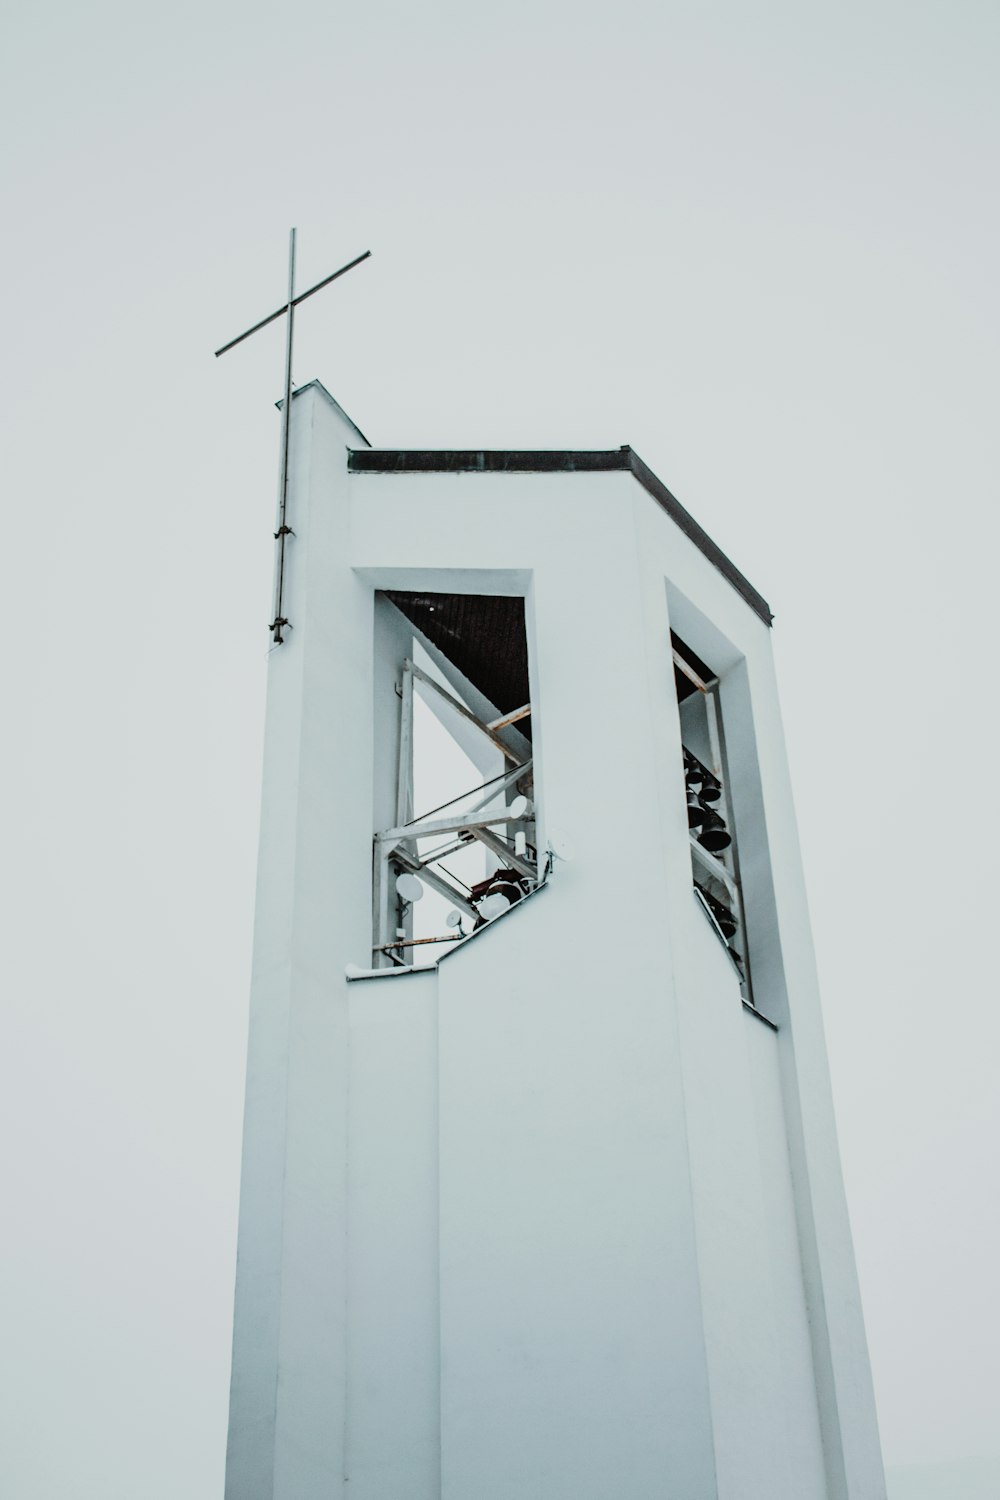 그 위에 십자가가있는 높은 흰색 탑